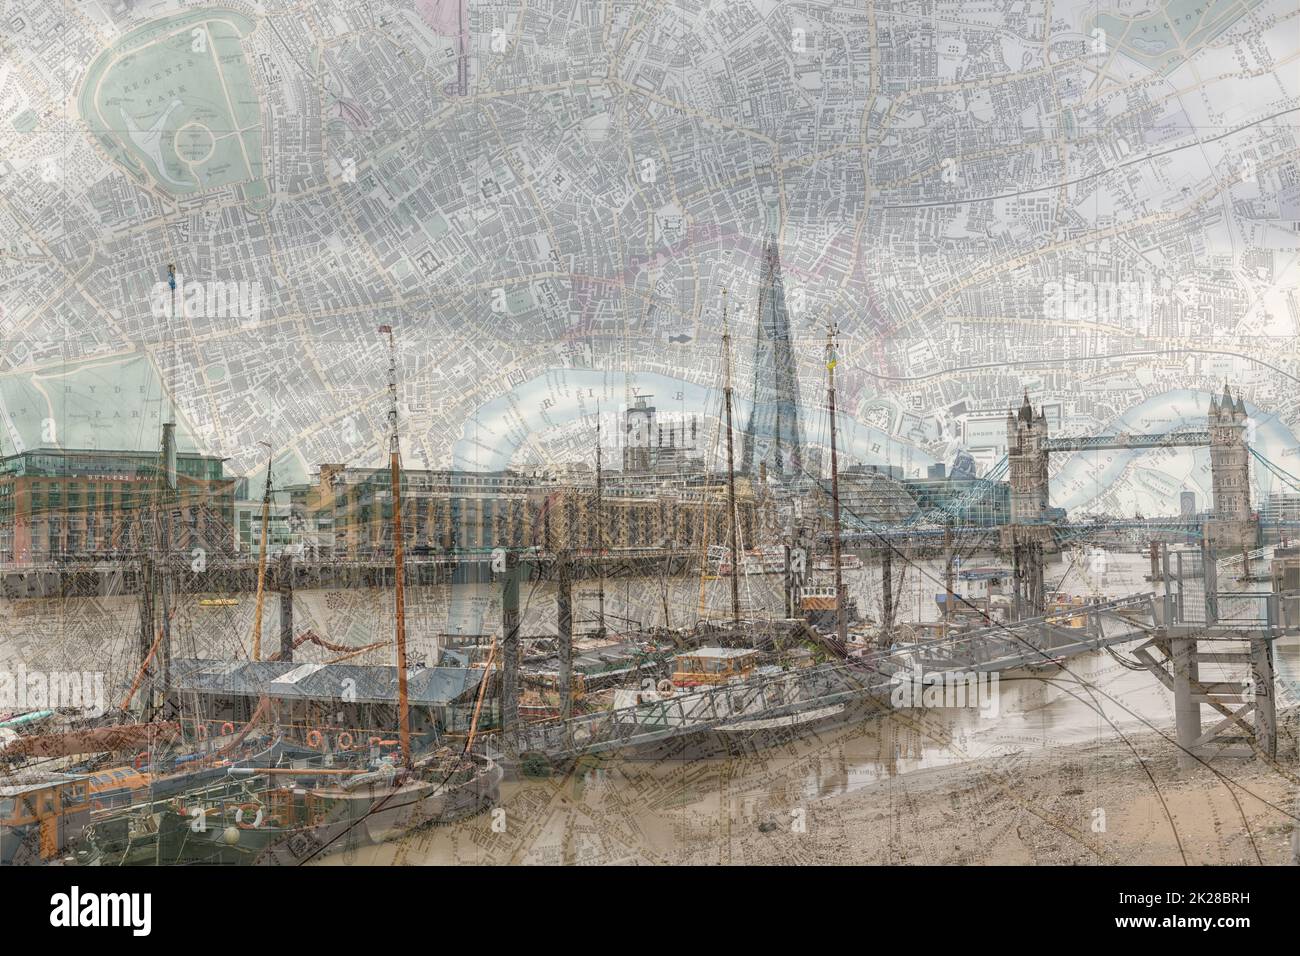 Public Domain alte Karte von London verschmolzen mit Foto der Themse, die ein altes Gefühl zu einem vertrauten Blick. Neu trifft Alt in diesem Bild. Stockfoto